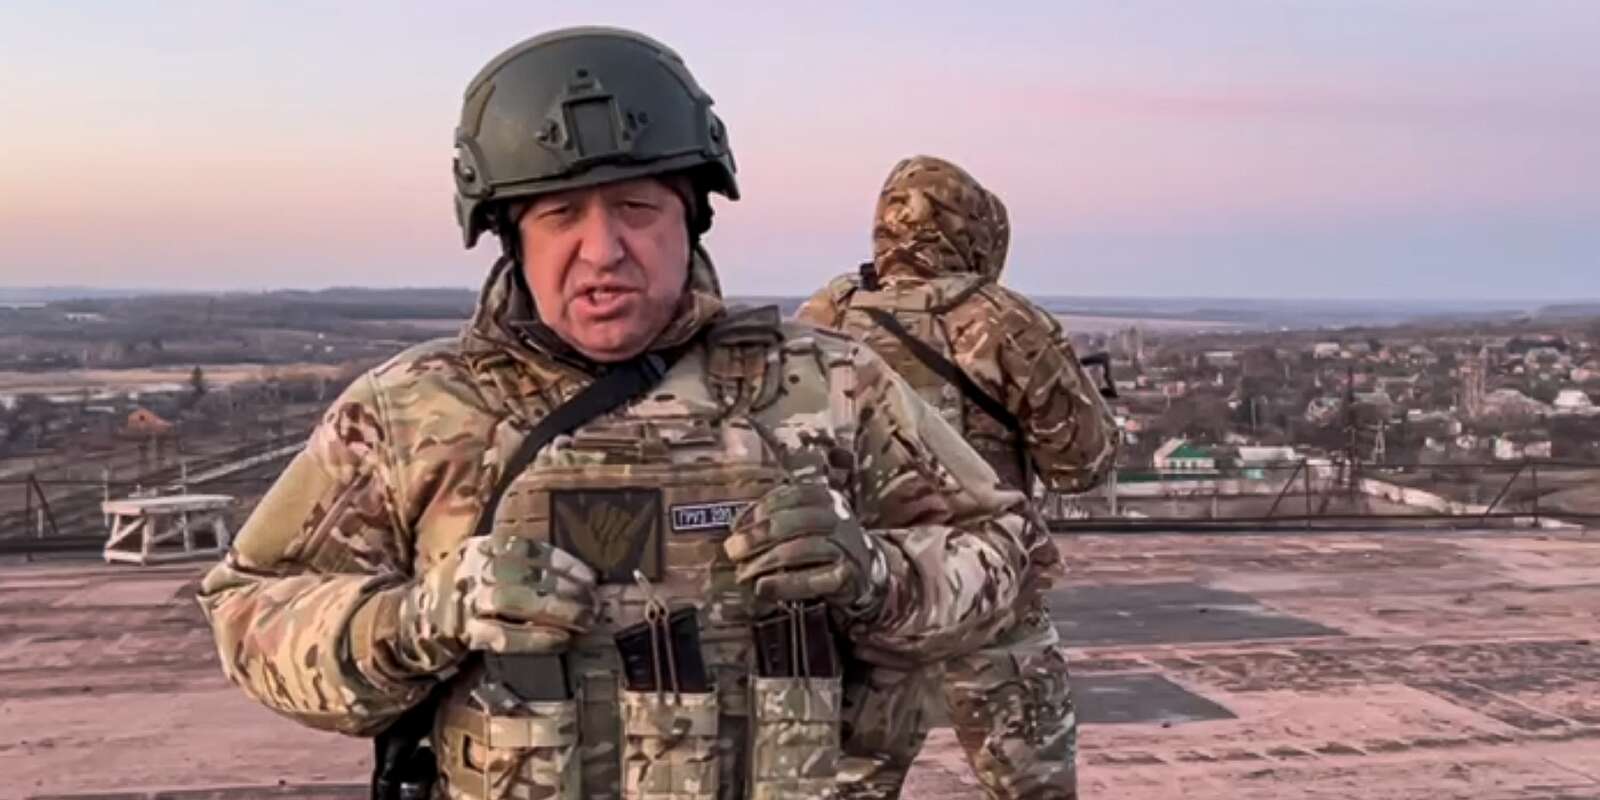 Capture d’écran tirée d’une vidéo publiée par le service de presse d’Evgueni Prigojine, le chef du groupe militaire russe Wagner, le 3 mars 2023, dans un endroit non localisé d’Ukraine